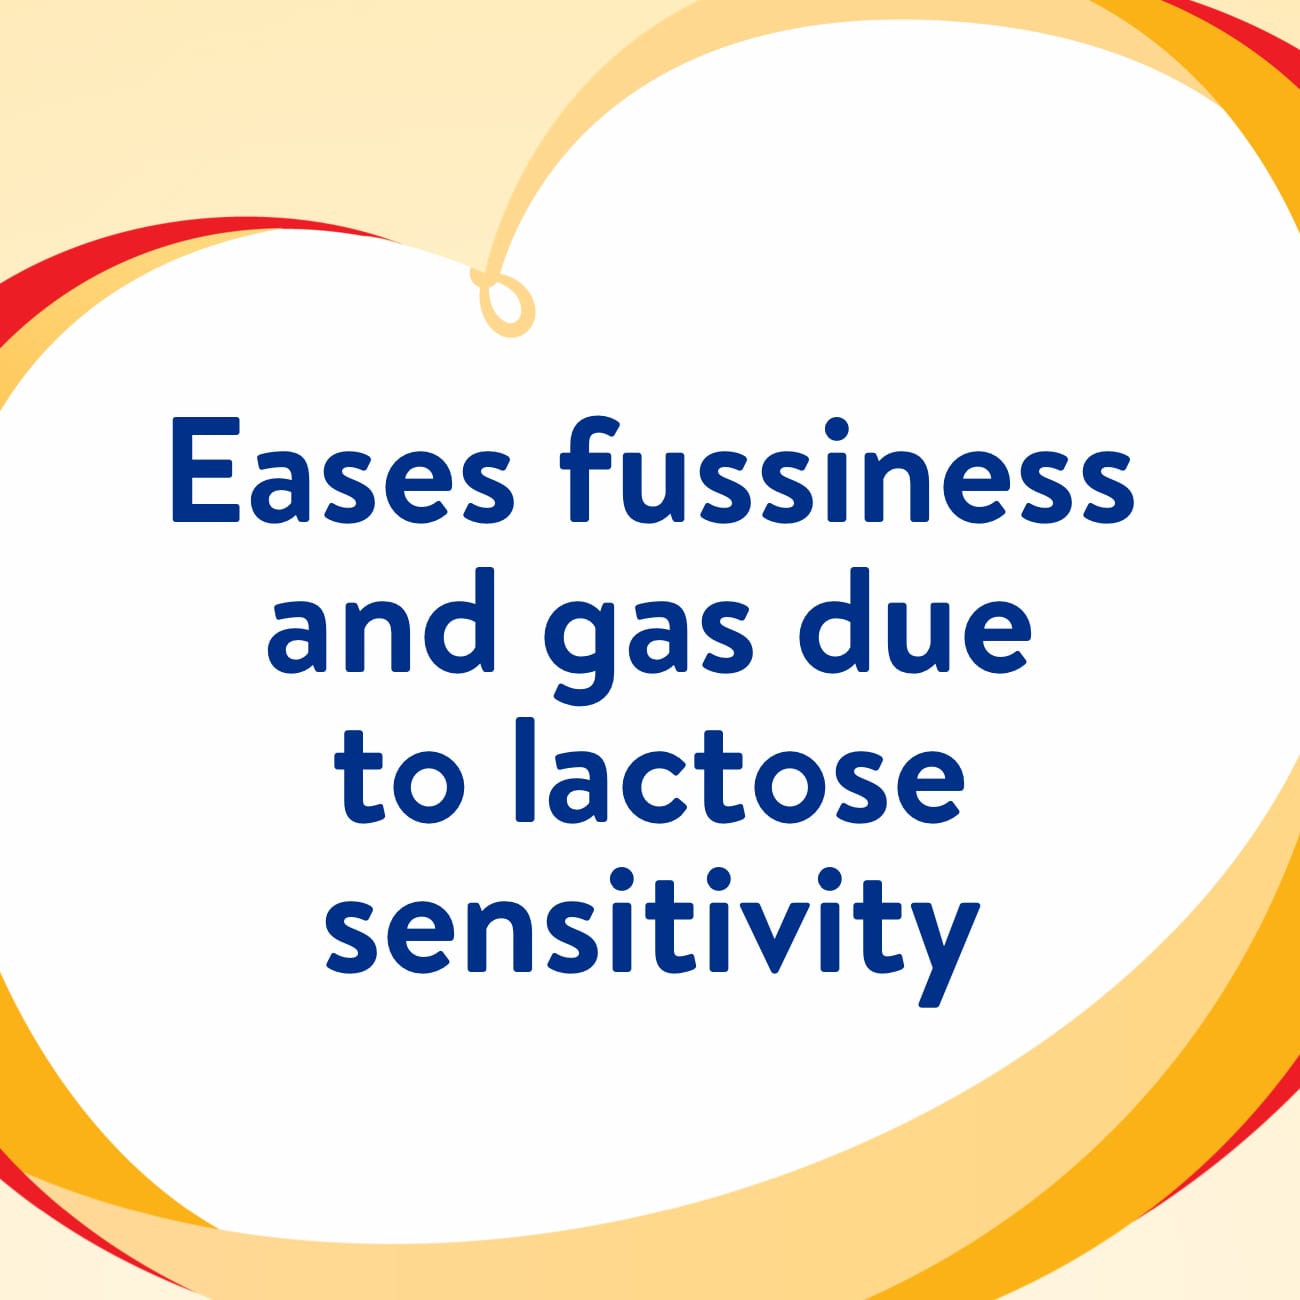 Similac Sensitive Infant Formula For Fussiness & Gas Due to Lactose Sensitivity - 1.13kg